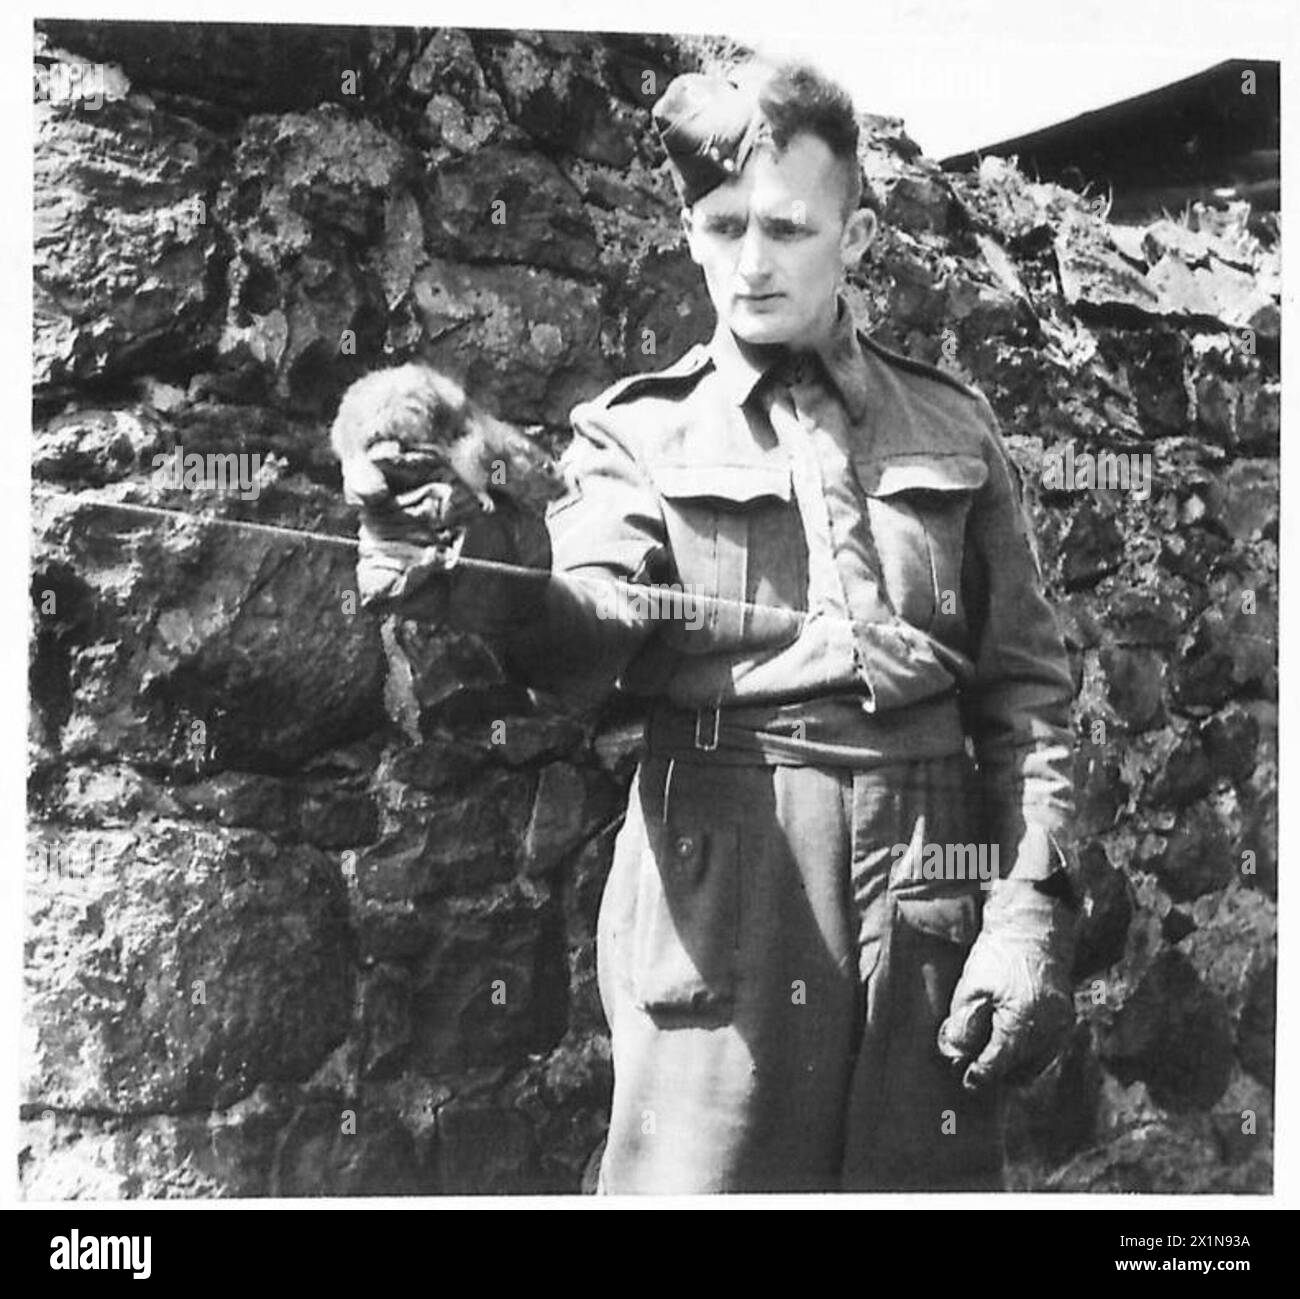 DIE BRITISCHE ARMEE IN GROSSBRITANNIEN, 1939-1945 - die Einheit war wahrscheinlich die einzige bekannte Rattenzerstörungseinheit in der britischen Armee bis zum Zeitpunkt der Aufnahme dieses Fotos. Lance Corporal Chadwick, ein Rattenpfleger seines zivilen Berufs (wie auch sein Vater), verfügte über eine Reihe von Frettchen und ausgebildeten Hunden. Er stammt aus Bolton, Lancashire. Lance Corporal A. Chadwick vom Rat Destruction Squad, Army Department Hygiene Northern Ireland, hält ein Frettchen, eines der Tiere seiner Einheit, 16. Juli 1943, British Army Stockfoto